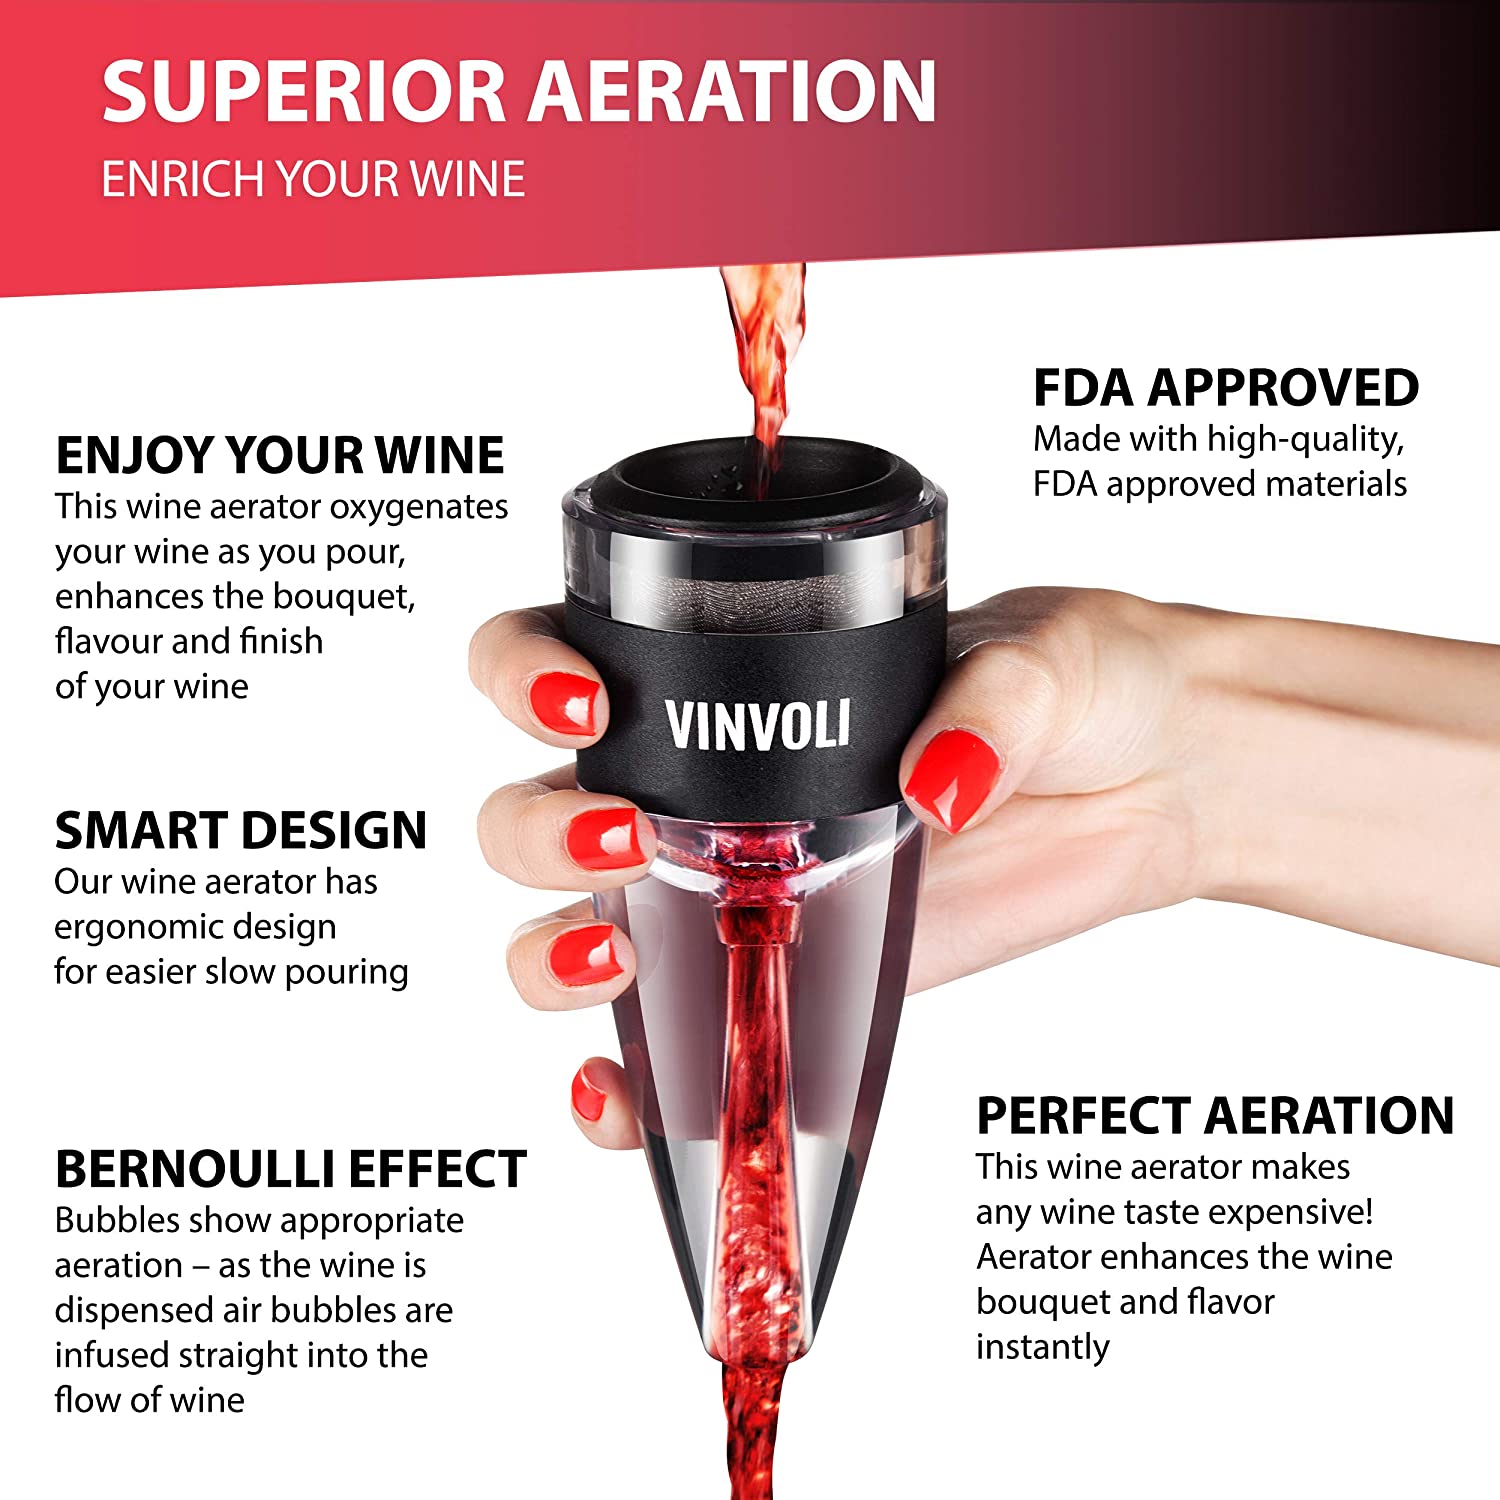 Vinvoli Luxury Wine Aerator